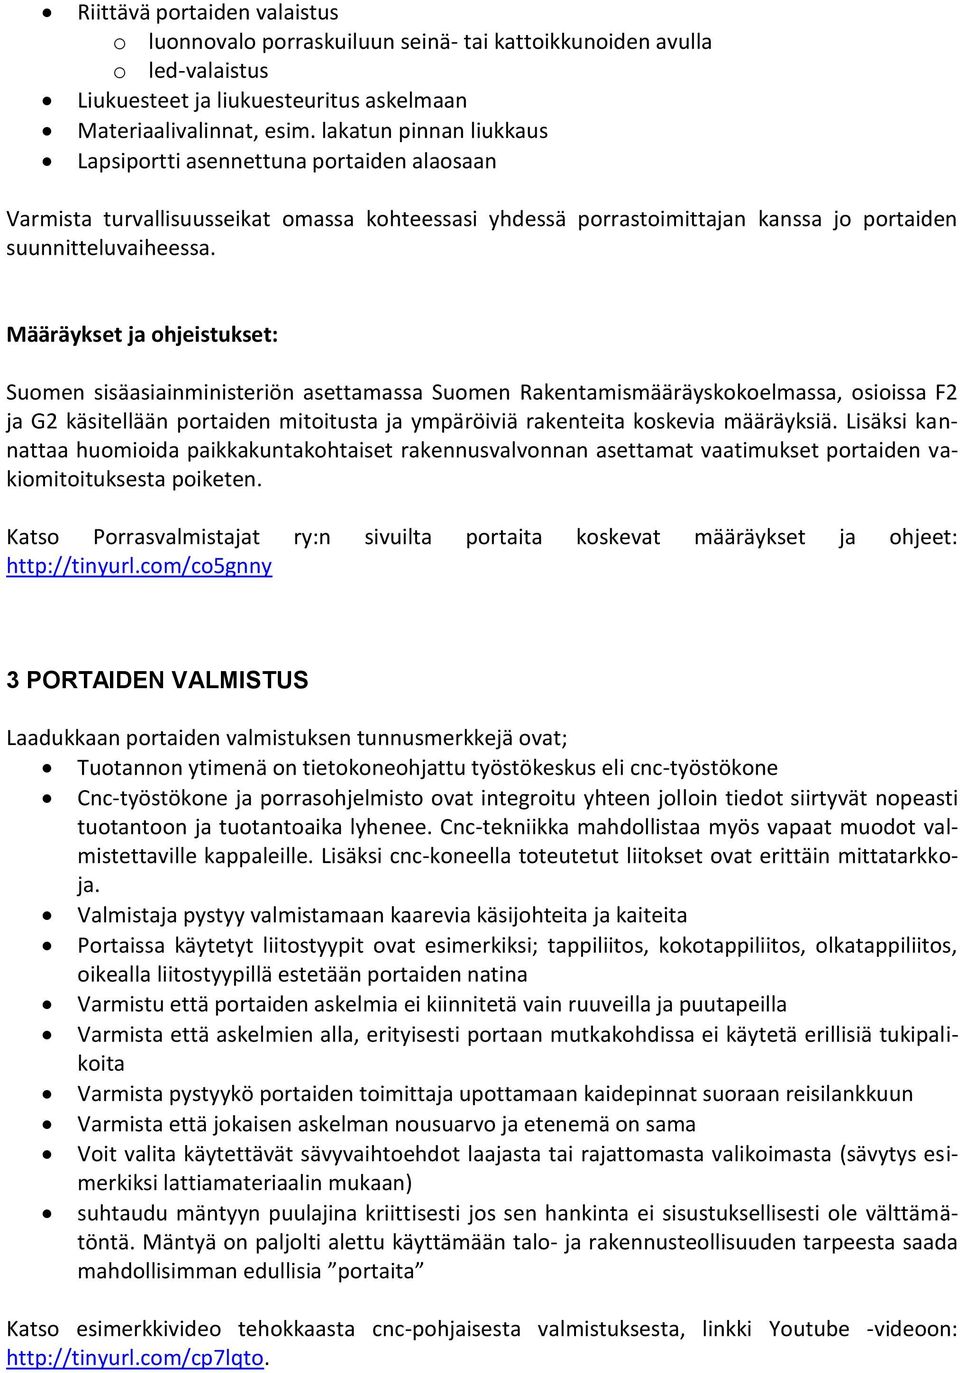 Määräykset ja ohjeistukset: Suomen sisäasiainministeriön asettamassa Suomen Rakentamismääräyskokoelmassa, osioissa F2 ja G2 käsitellään portaiden mitoitusta ja ympäröiviä rakenteita koskevia